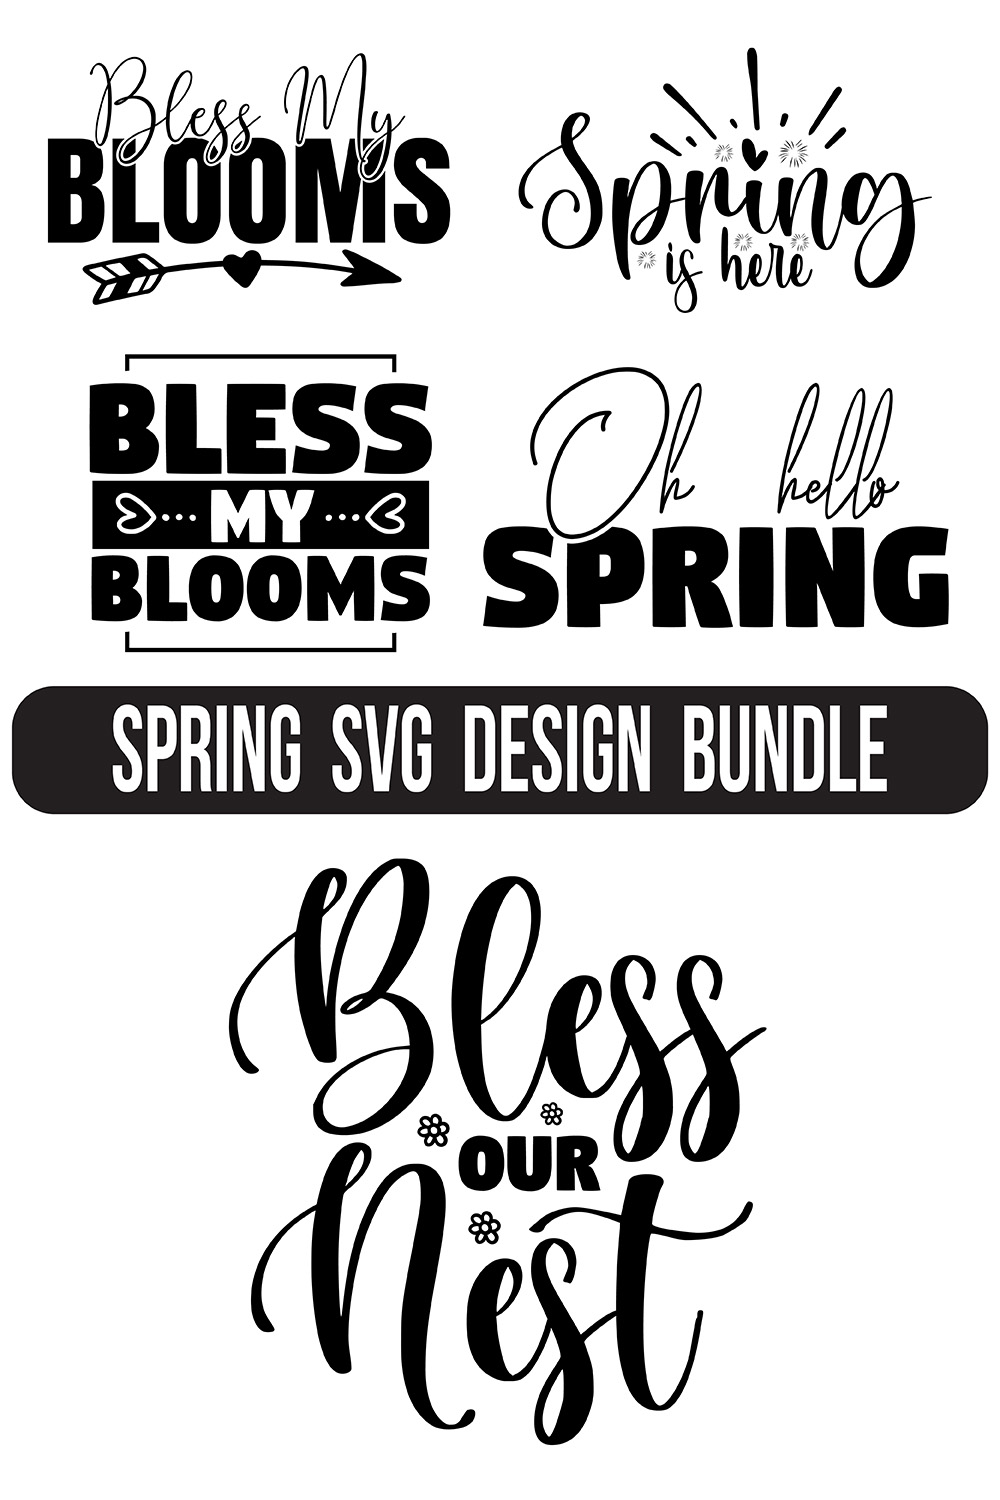 Spring Typography SVG Designs Bundle pinterest image.